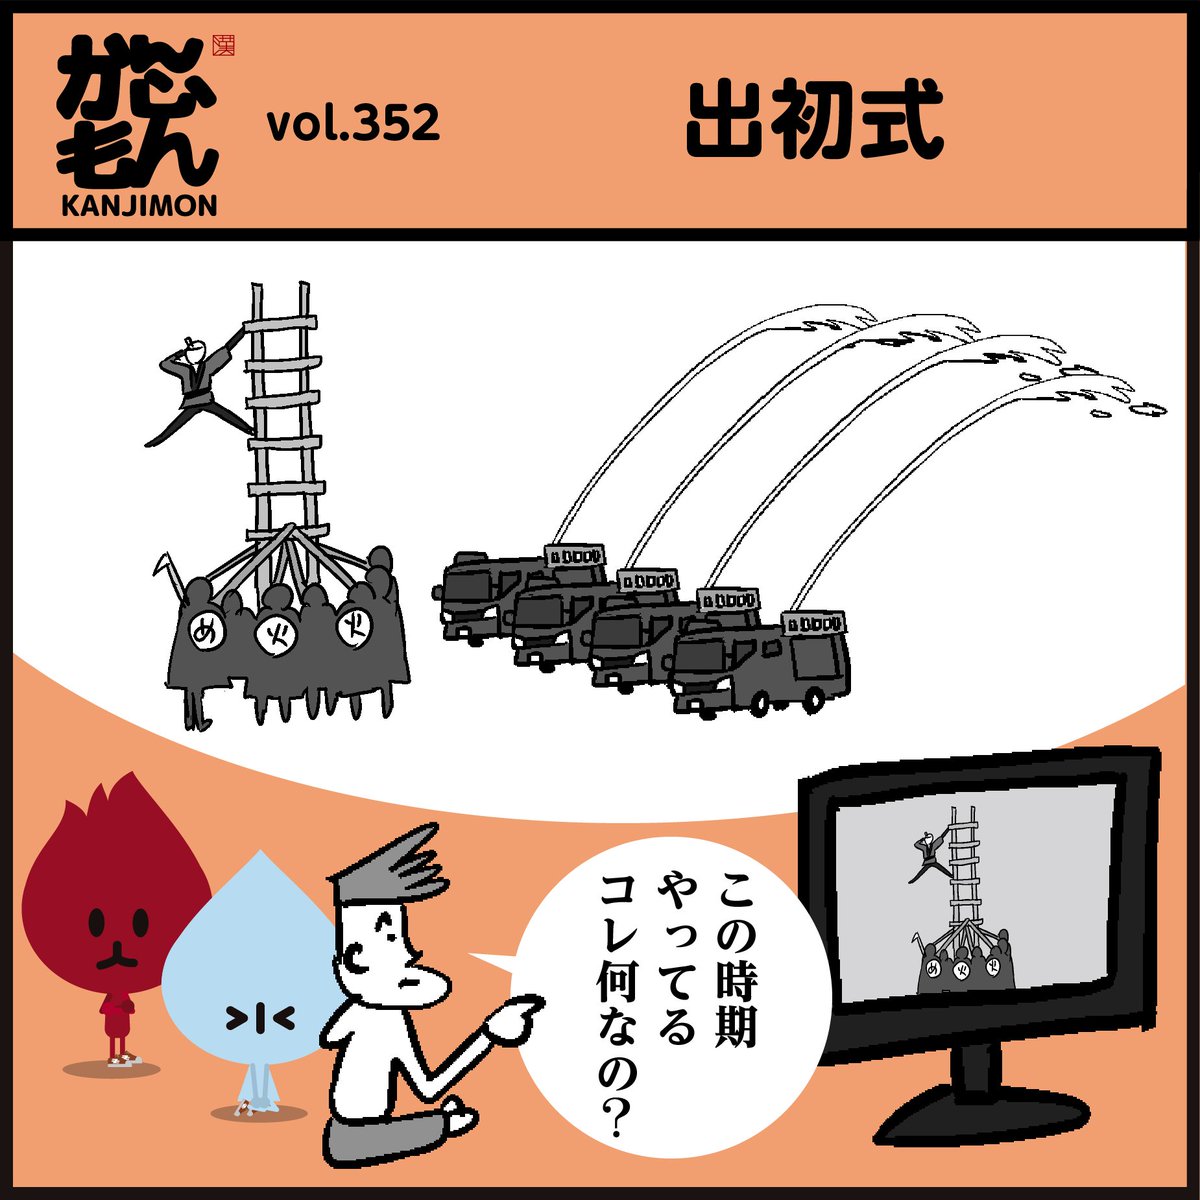 🌅新春を飾る恒例行事、漢字【出初式】←読めましたか～?

🚒東京消防出初式は1月6日に東京臨海広域防災公園(有明)・ビックサイトで開催されます。
#4コマ漫画 #イラスト #クイズ 